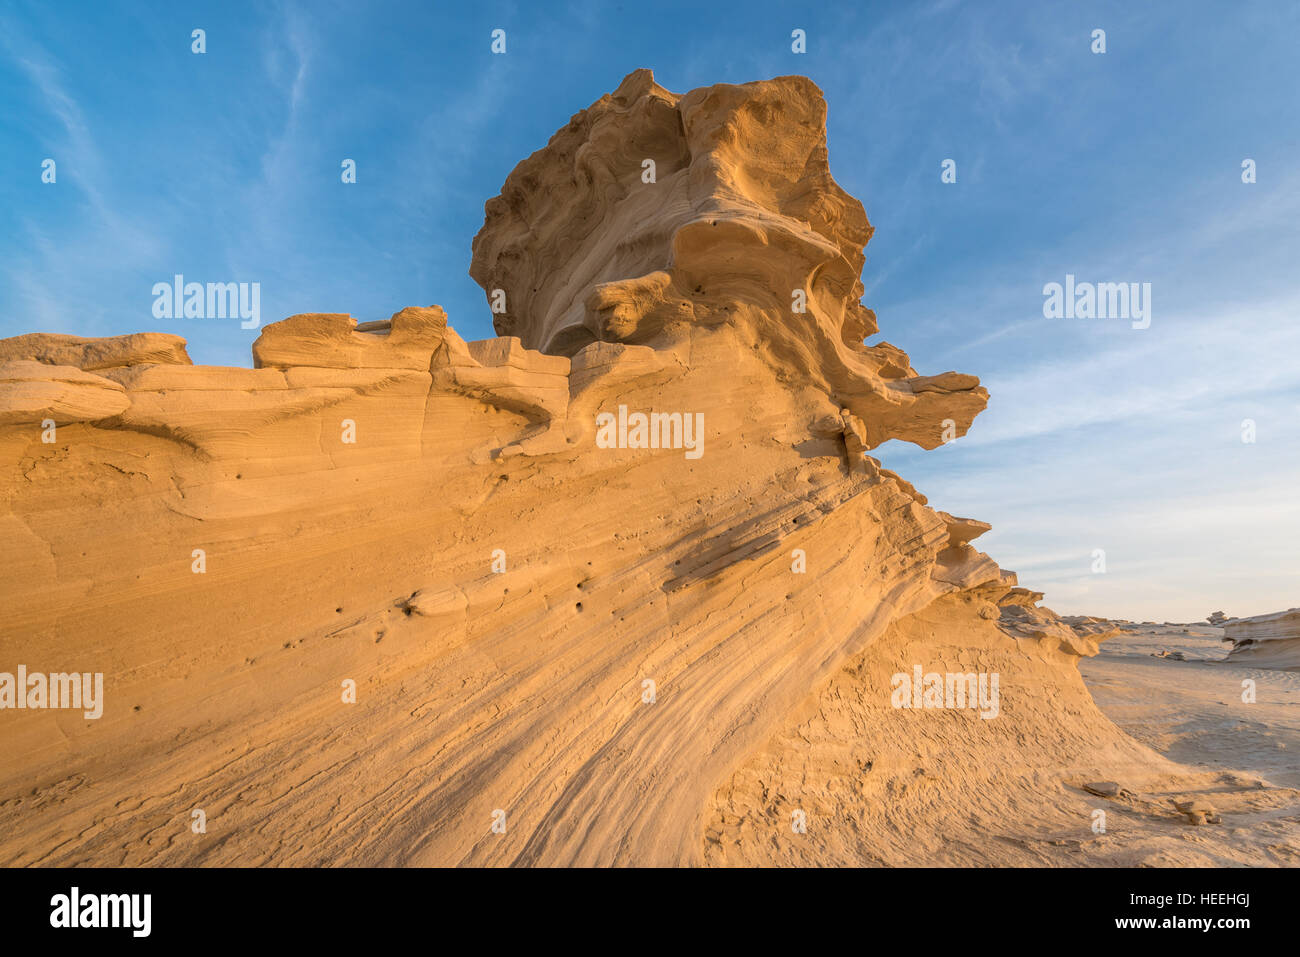 Fossil dunes, Abu Dhabi, UAE Stock Photo